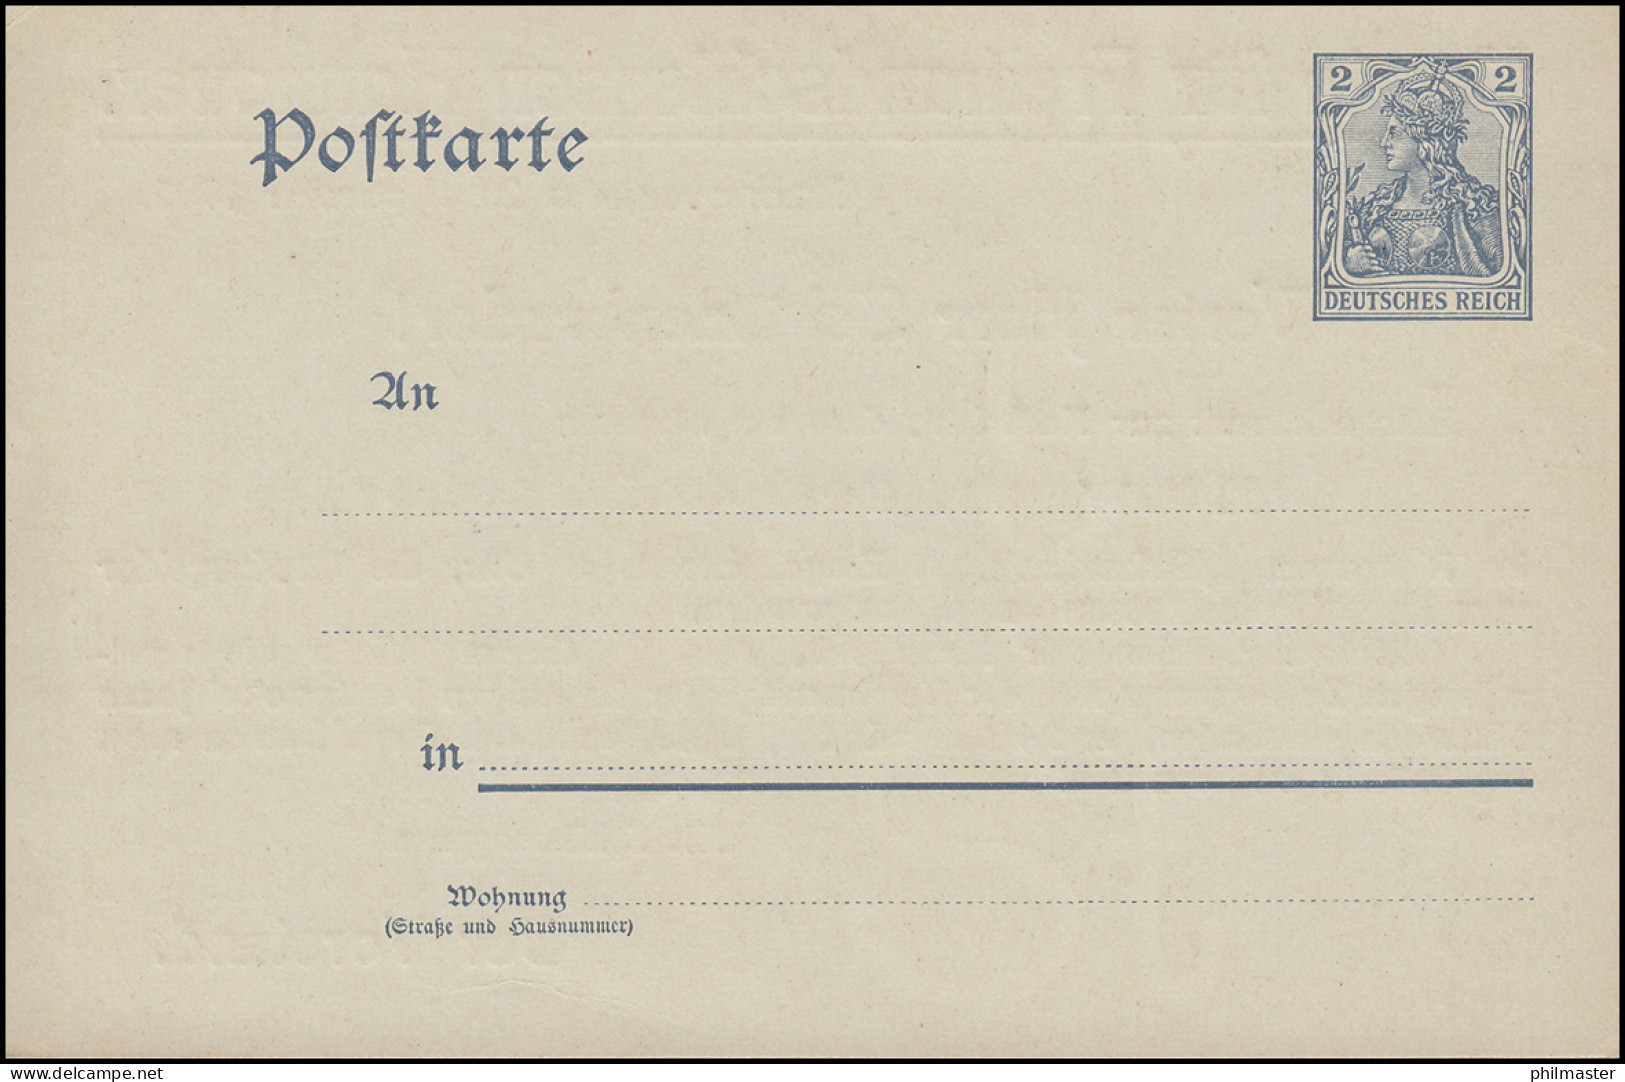 Postkarte P 57X Mit Zudruck Verein Für Freihandschießen Hannover, Ungebraucht ** - Waffenschiessen